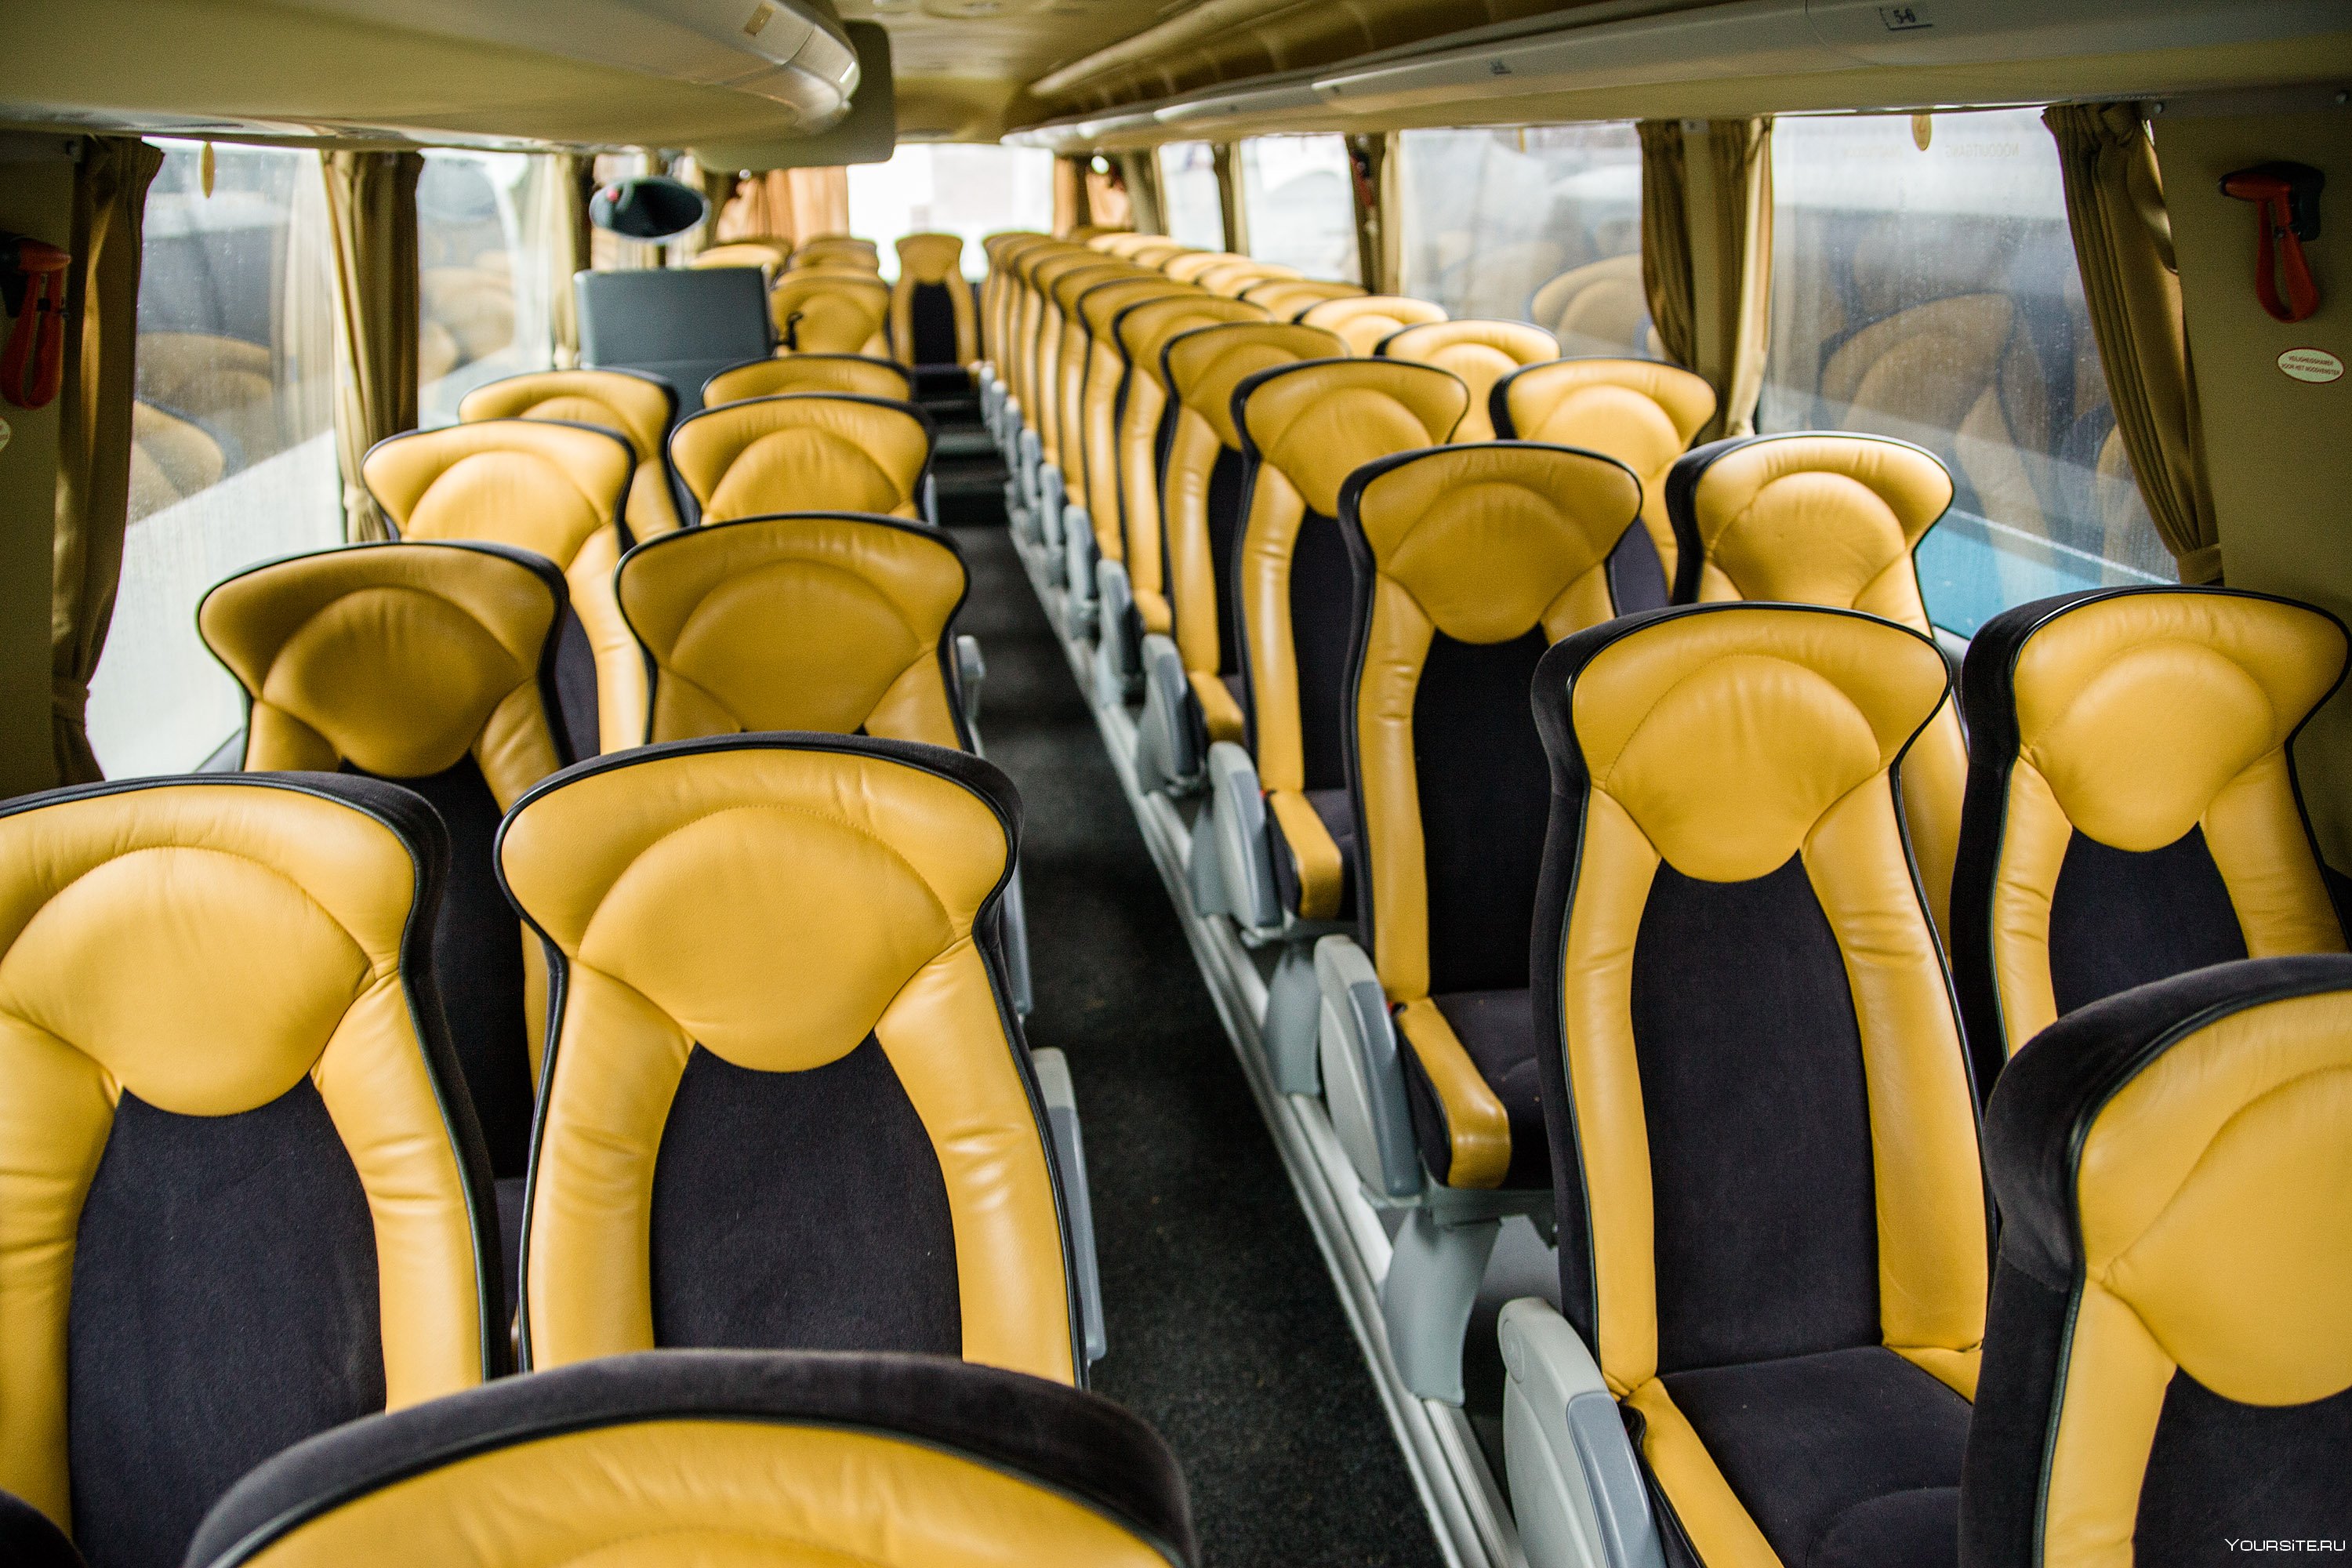 Салон общественного транспорта. Iveco Foxbus салон. Салон автобуса. Экскурсионный автобус внутри. Туристический автобус изнутри.